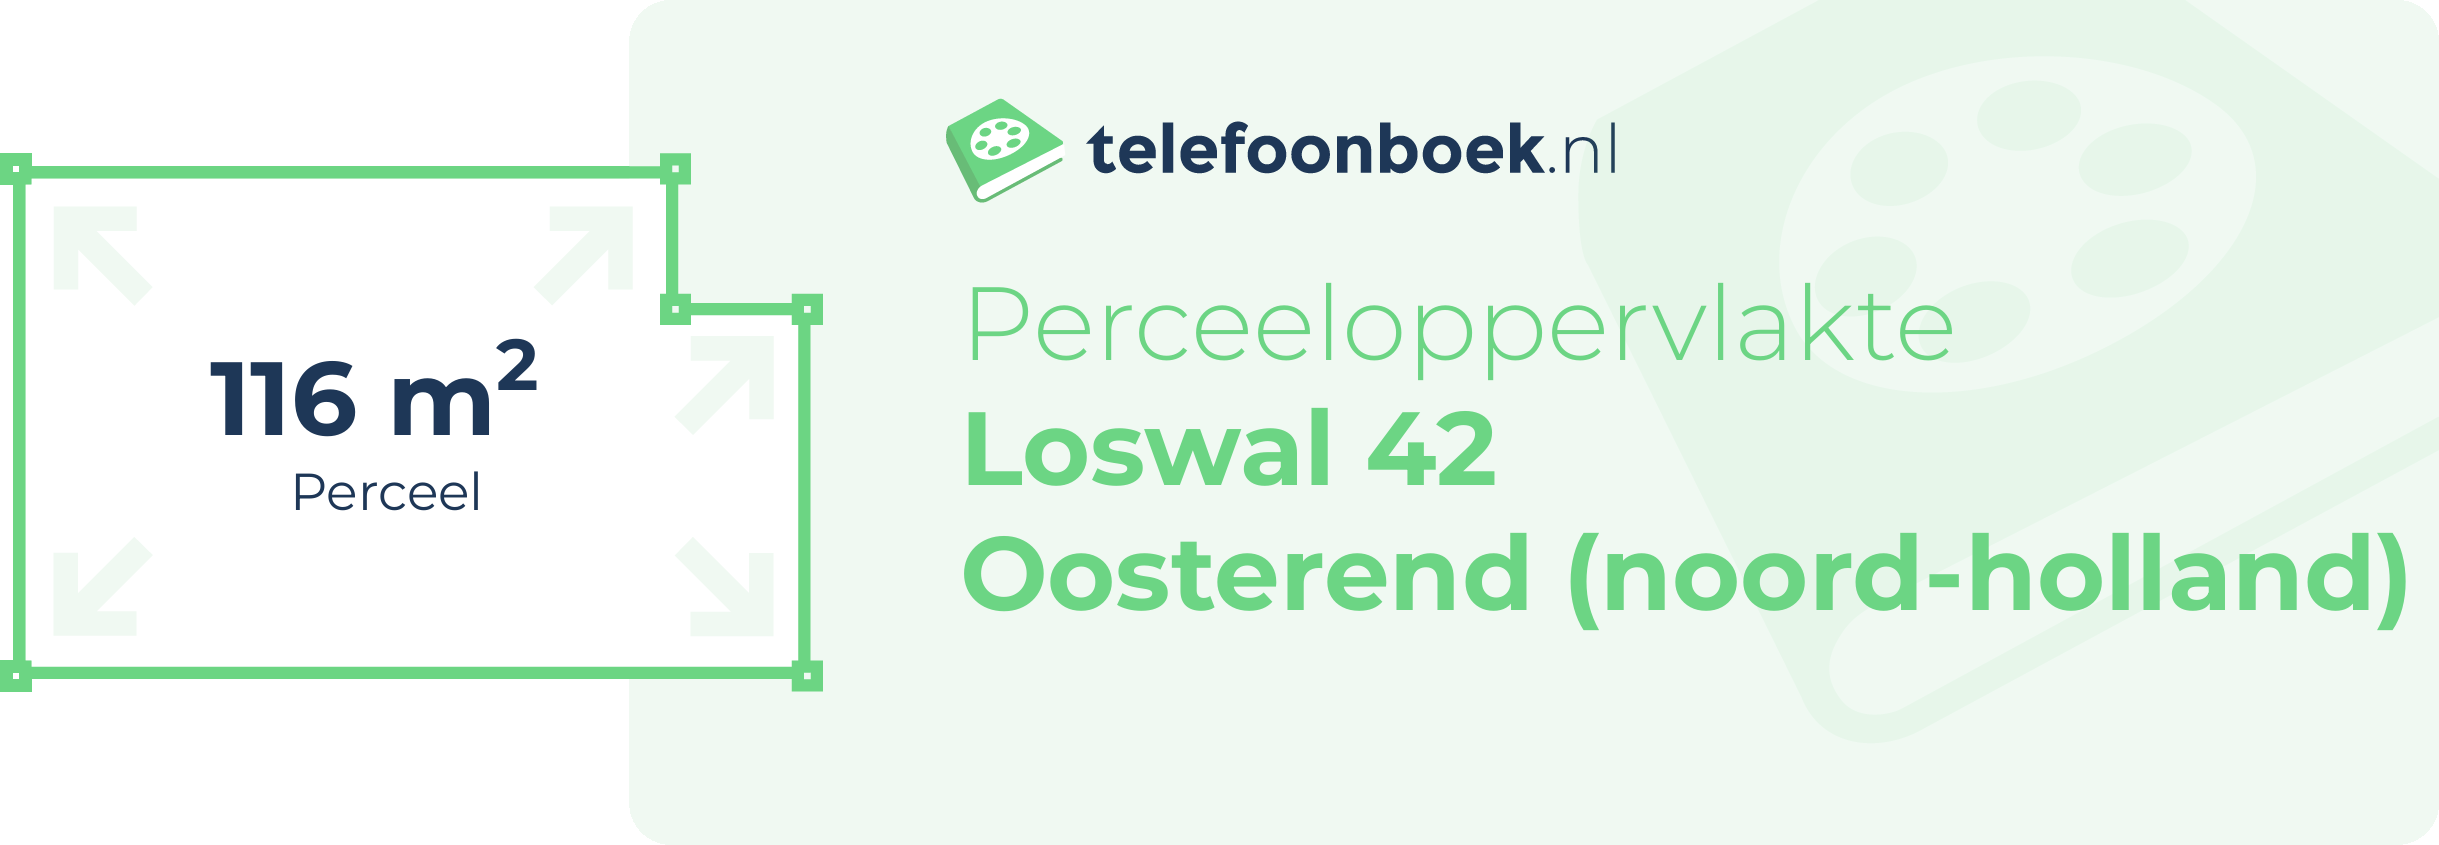 Perceeloppervlakte Loswal 42 Oosterend (Noord-Holland)